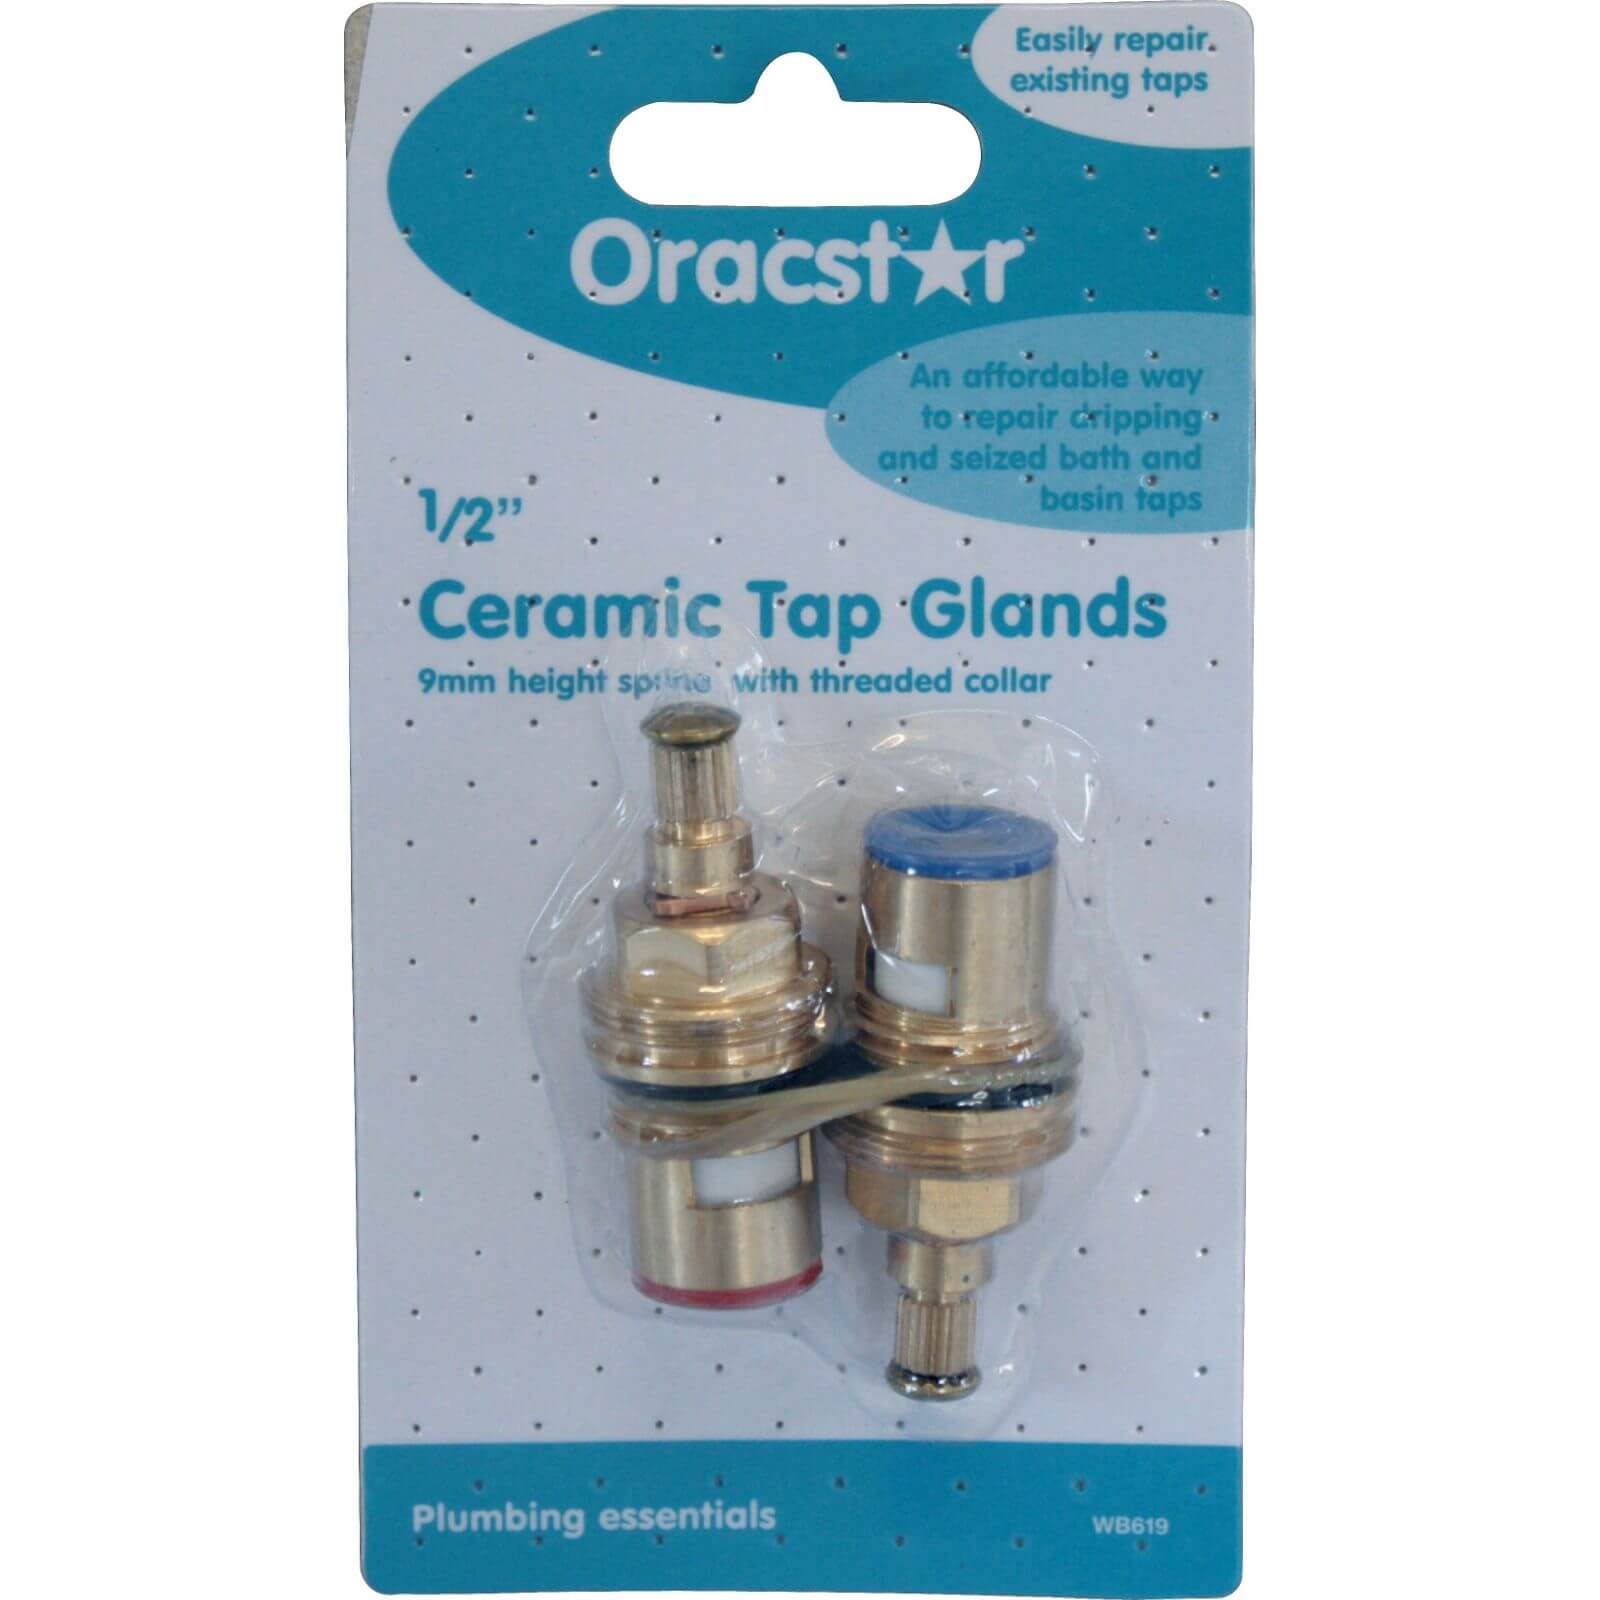 Oracstar 1/2 inch Ceramic Tap Gland 9mm Spline